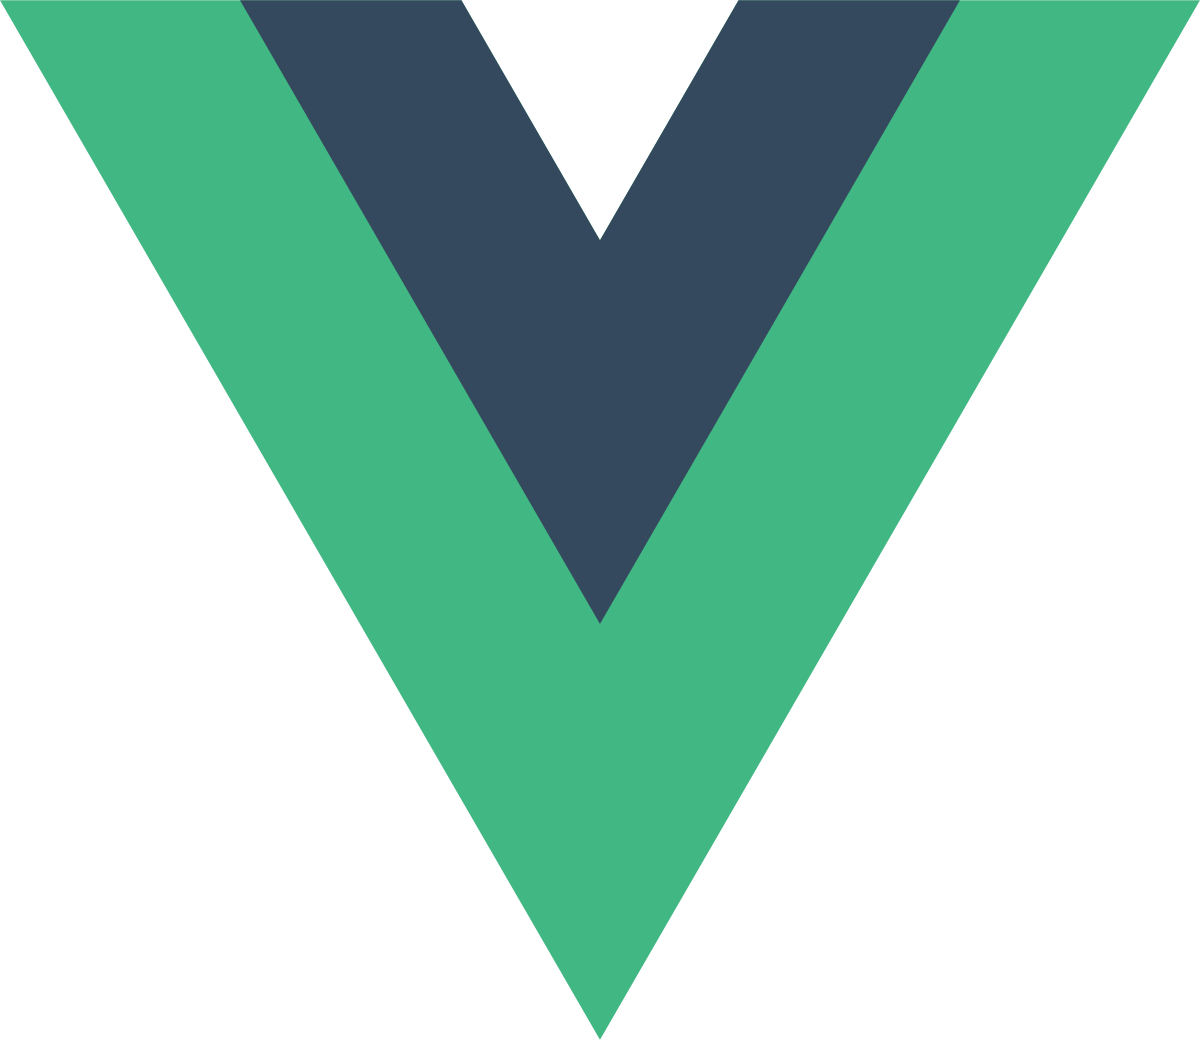 logo of the Vue.js framework